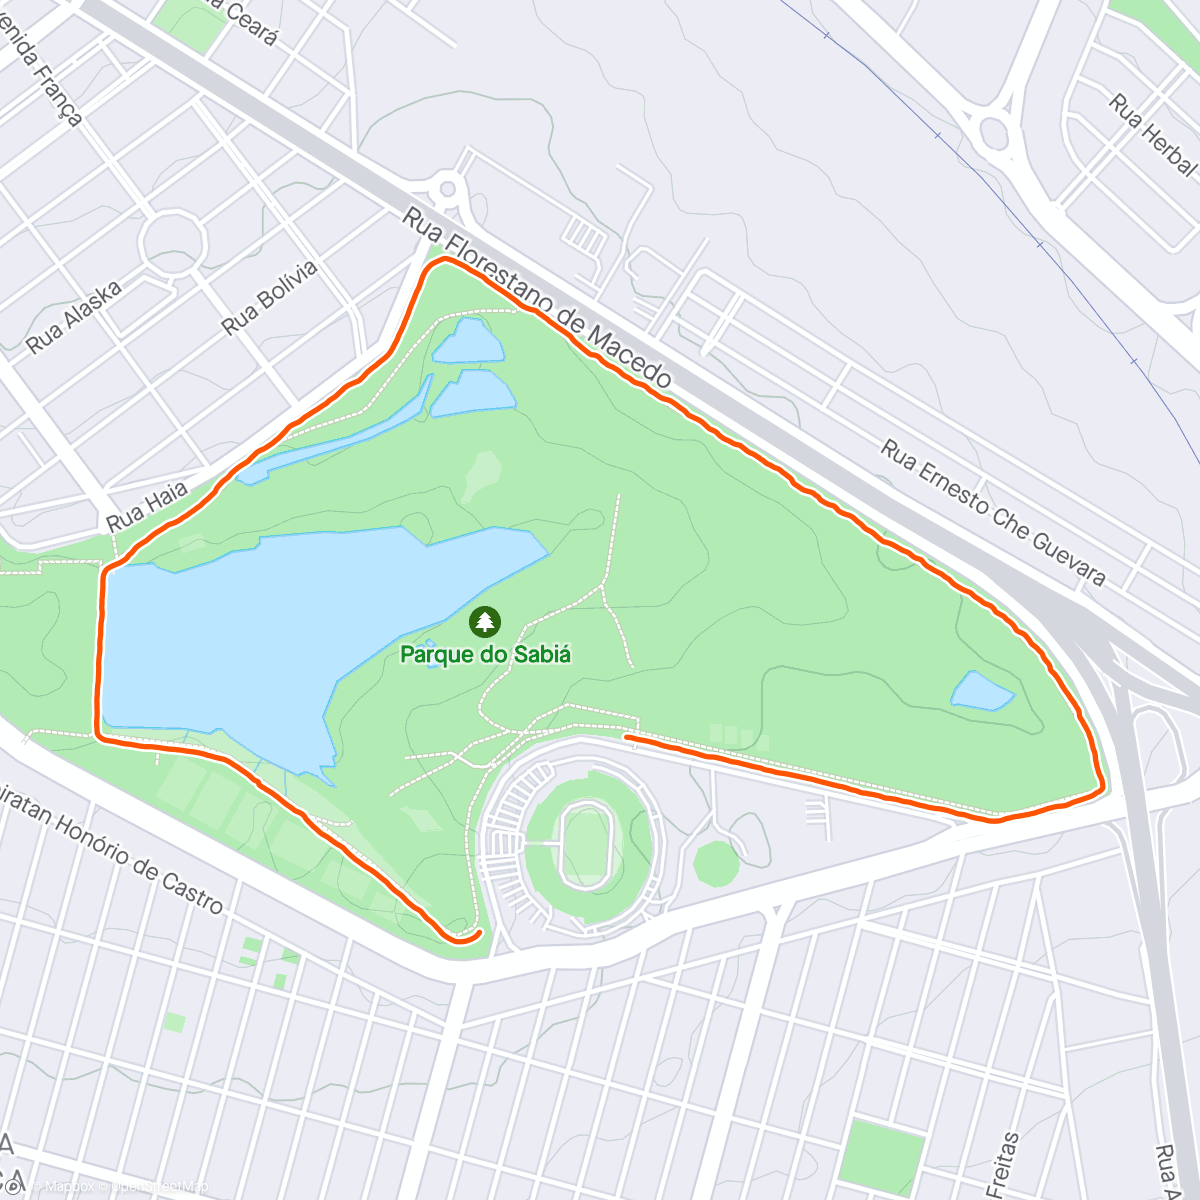 「Caminhada no Parque do Sabiá」活動的地圖